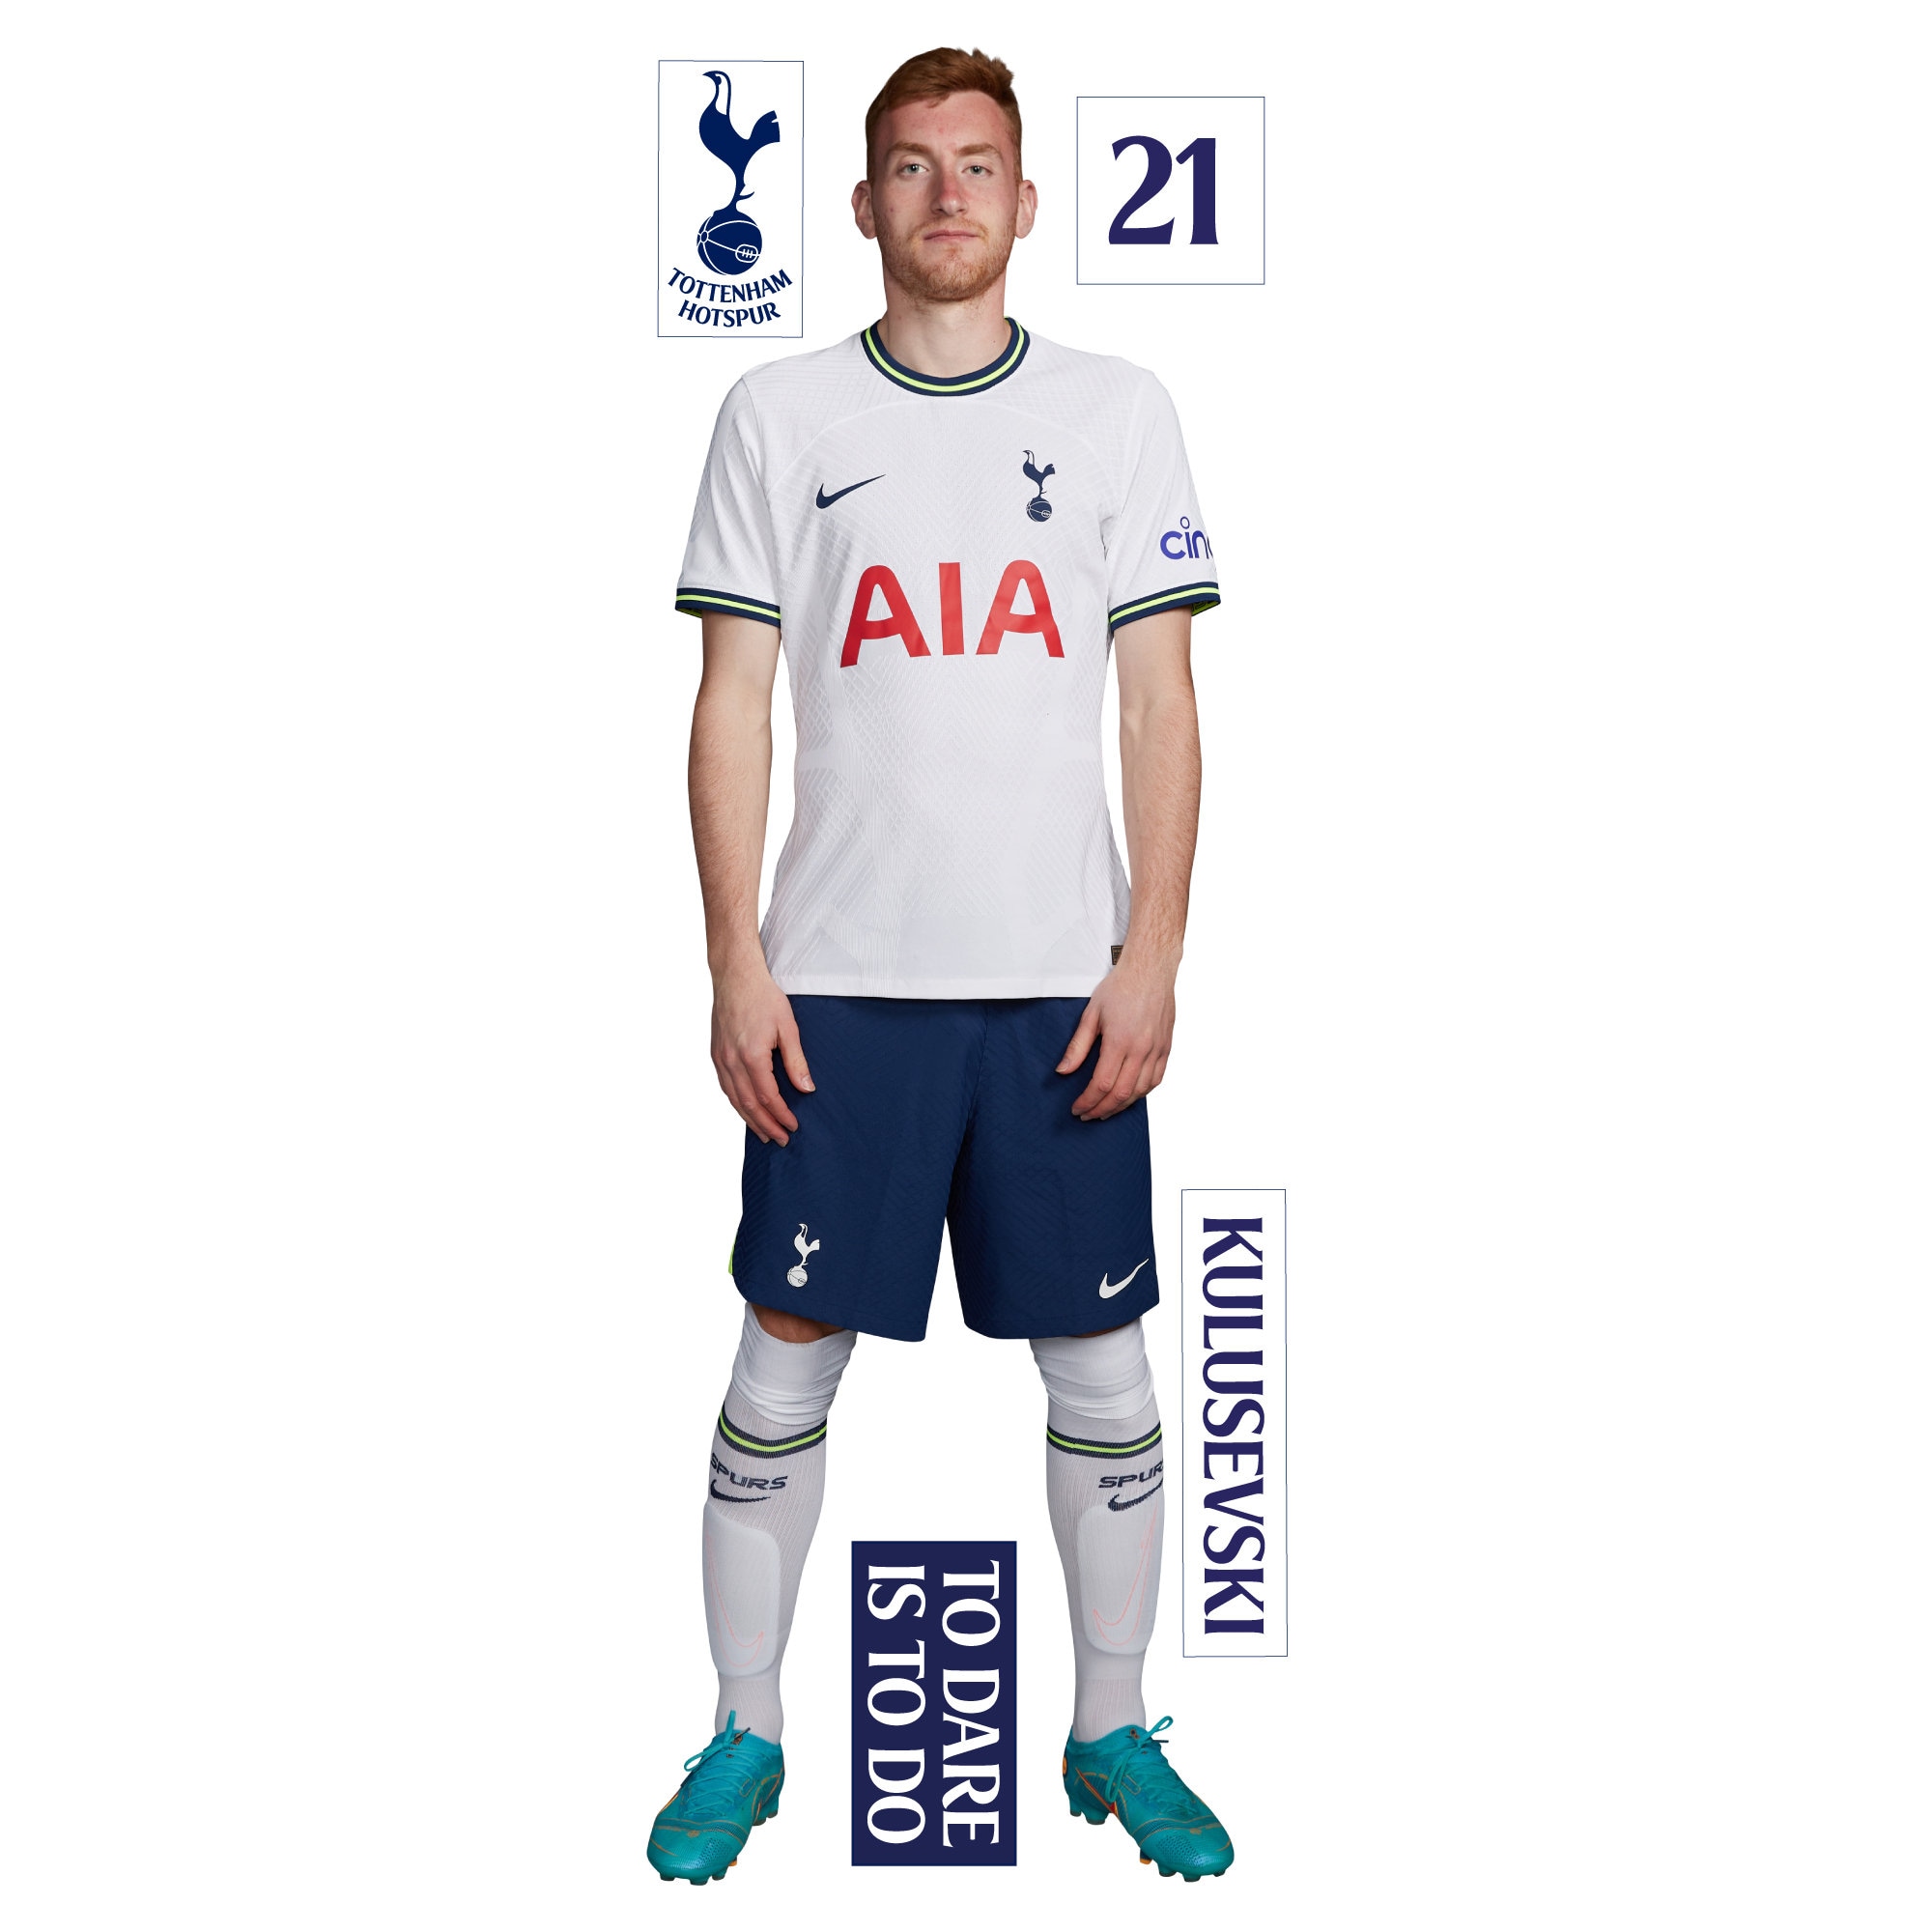 Tottenham Hotspur FC x Nike - Home kit 20/21 - Concept : r